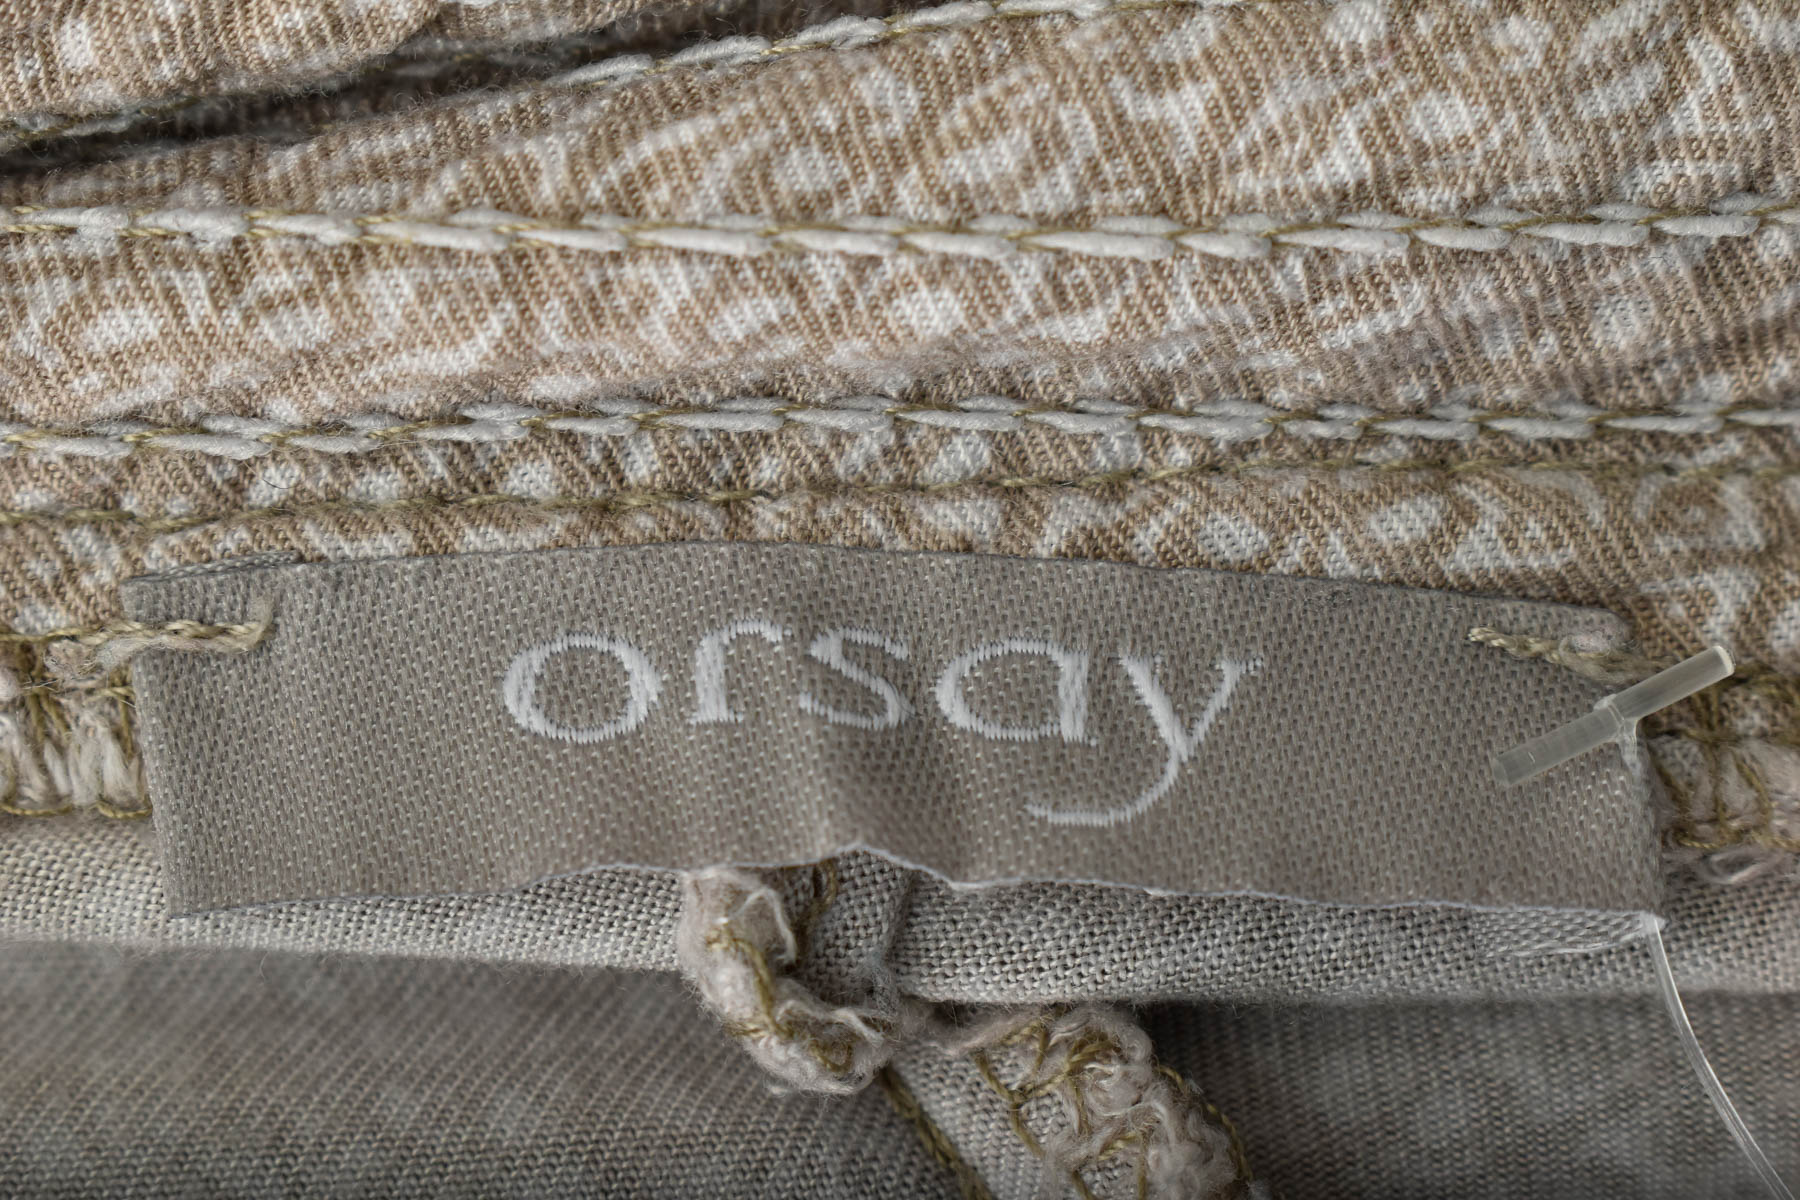 Γυναικεία παντελόνια - Orsay - 2